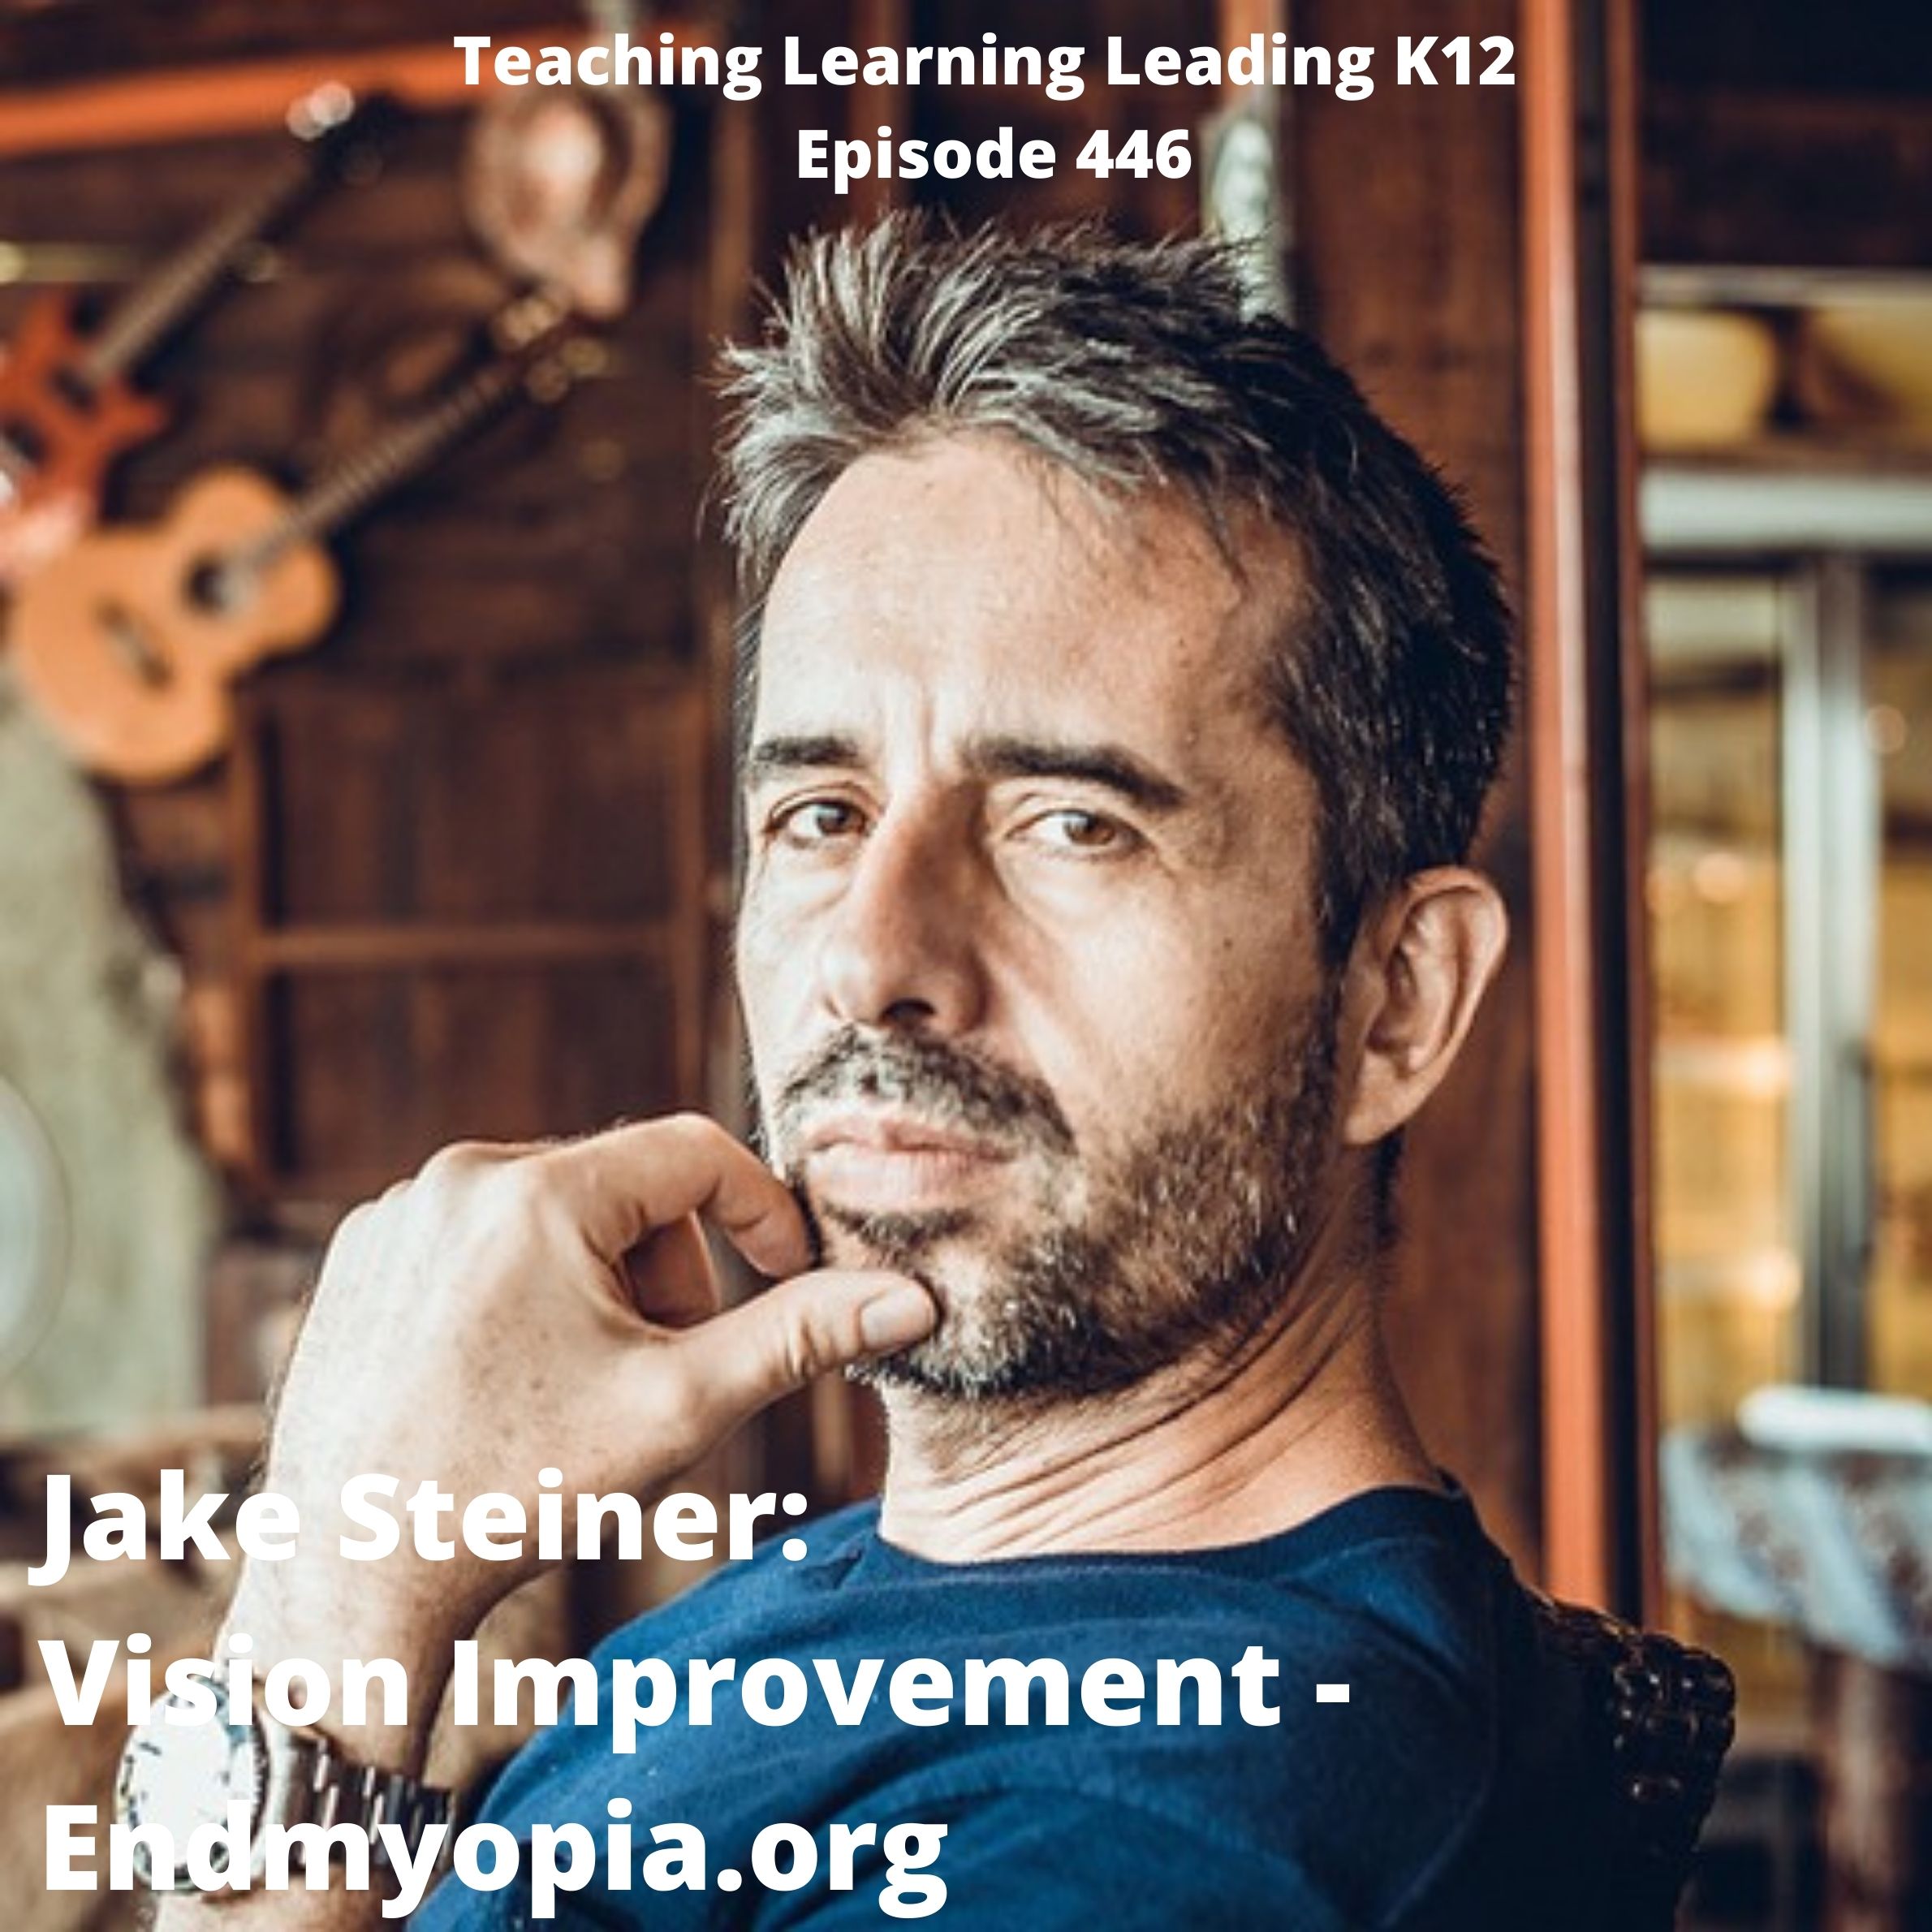 Jake Steiner: Vision Improvement - endmyopia.org - 446